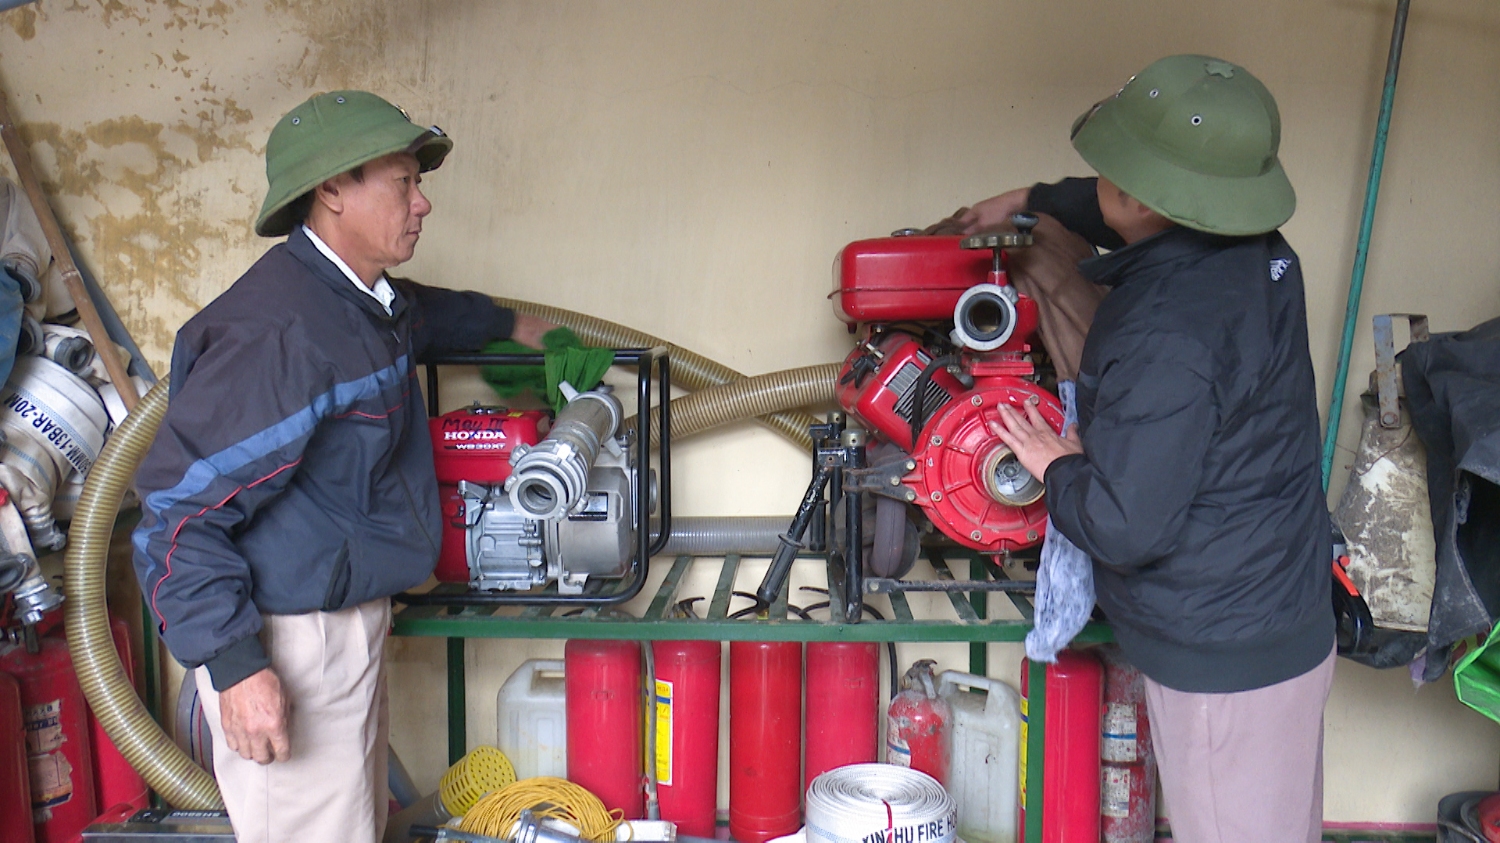 Công tác kiểm tra, bảo trì bảo dưỡng các thiết bị phòng cháy chữa cháy tại chợ Ba Đồn thường xuyên, đảm bảo sử dụng hiệu quả khi cháy nổ xảy ra (1)